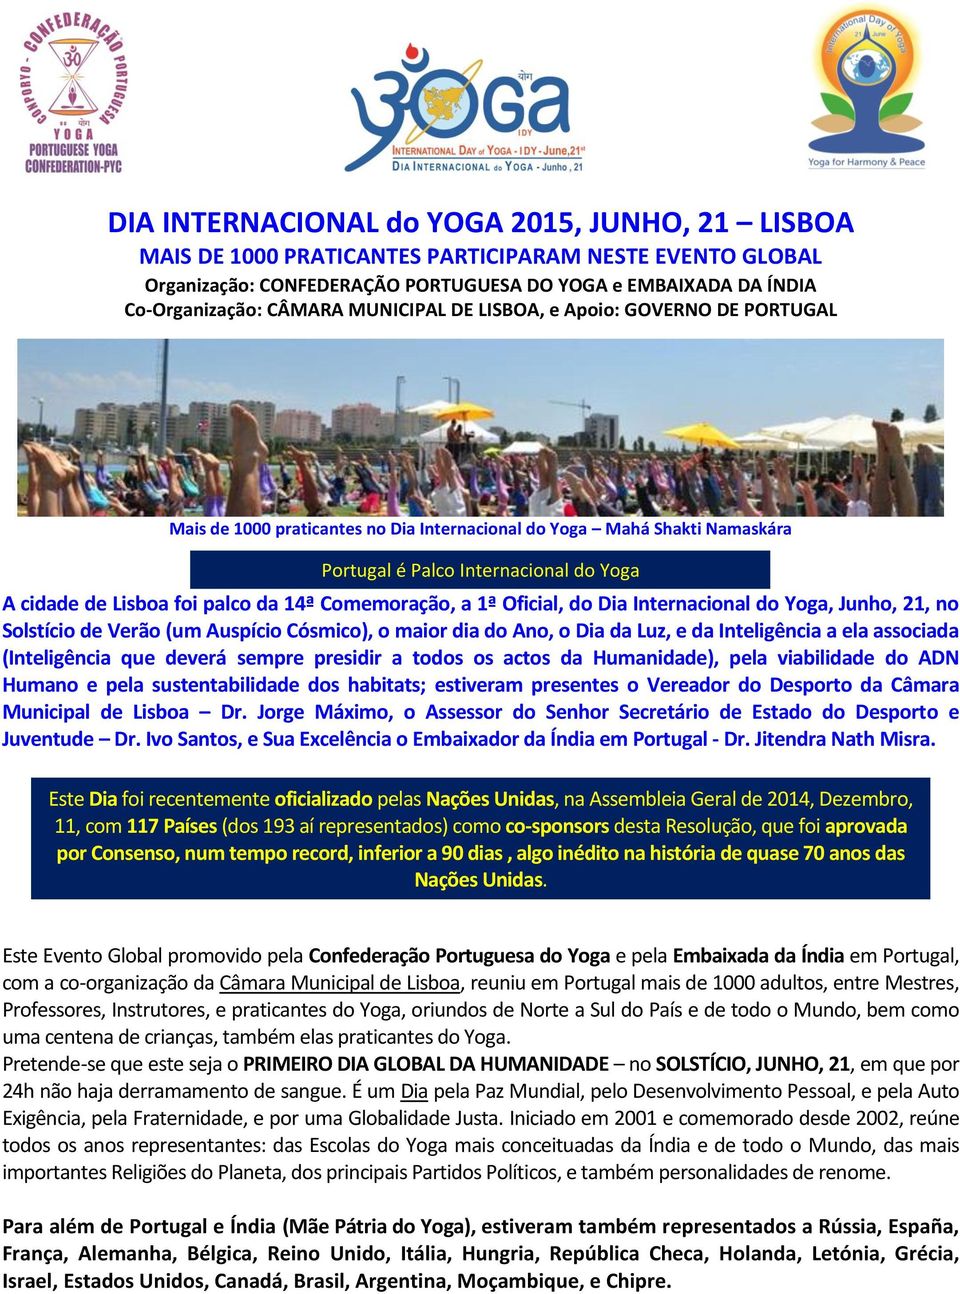 14ª Comemoração, a 1ª Oficial, do Dia Internacional do Yoga, Junho, 21, no Solstício de Verão (um Auspício Cósmico), o maior dia do Ano, o Dia da Luz, e da Inteligência a ela associada (Inteligência